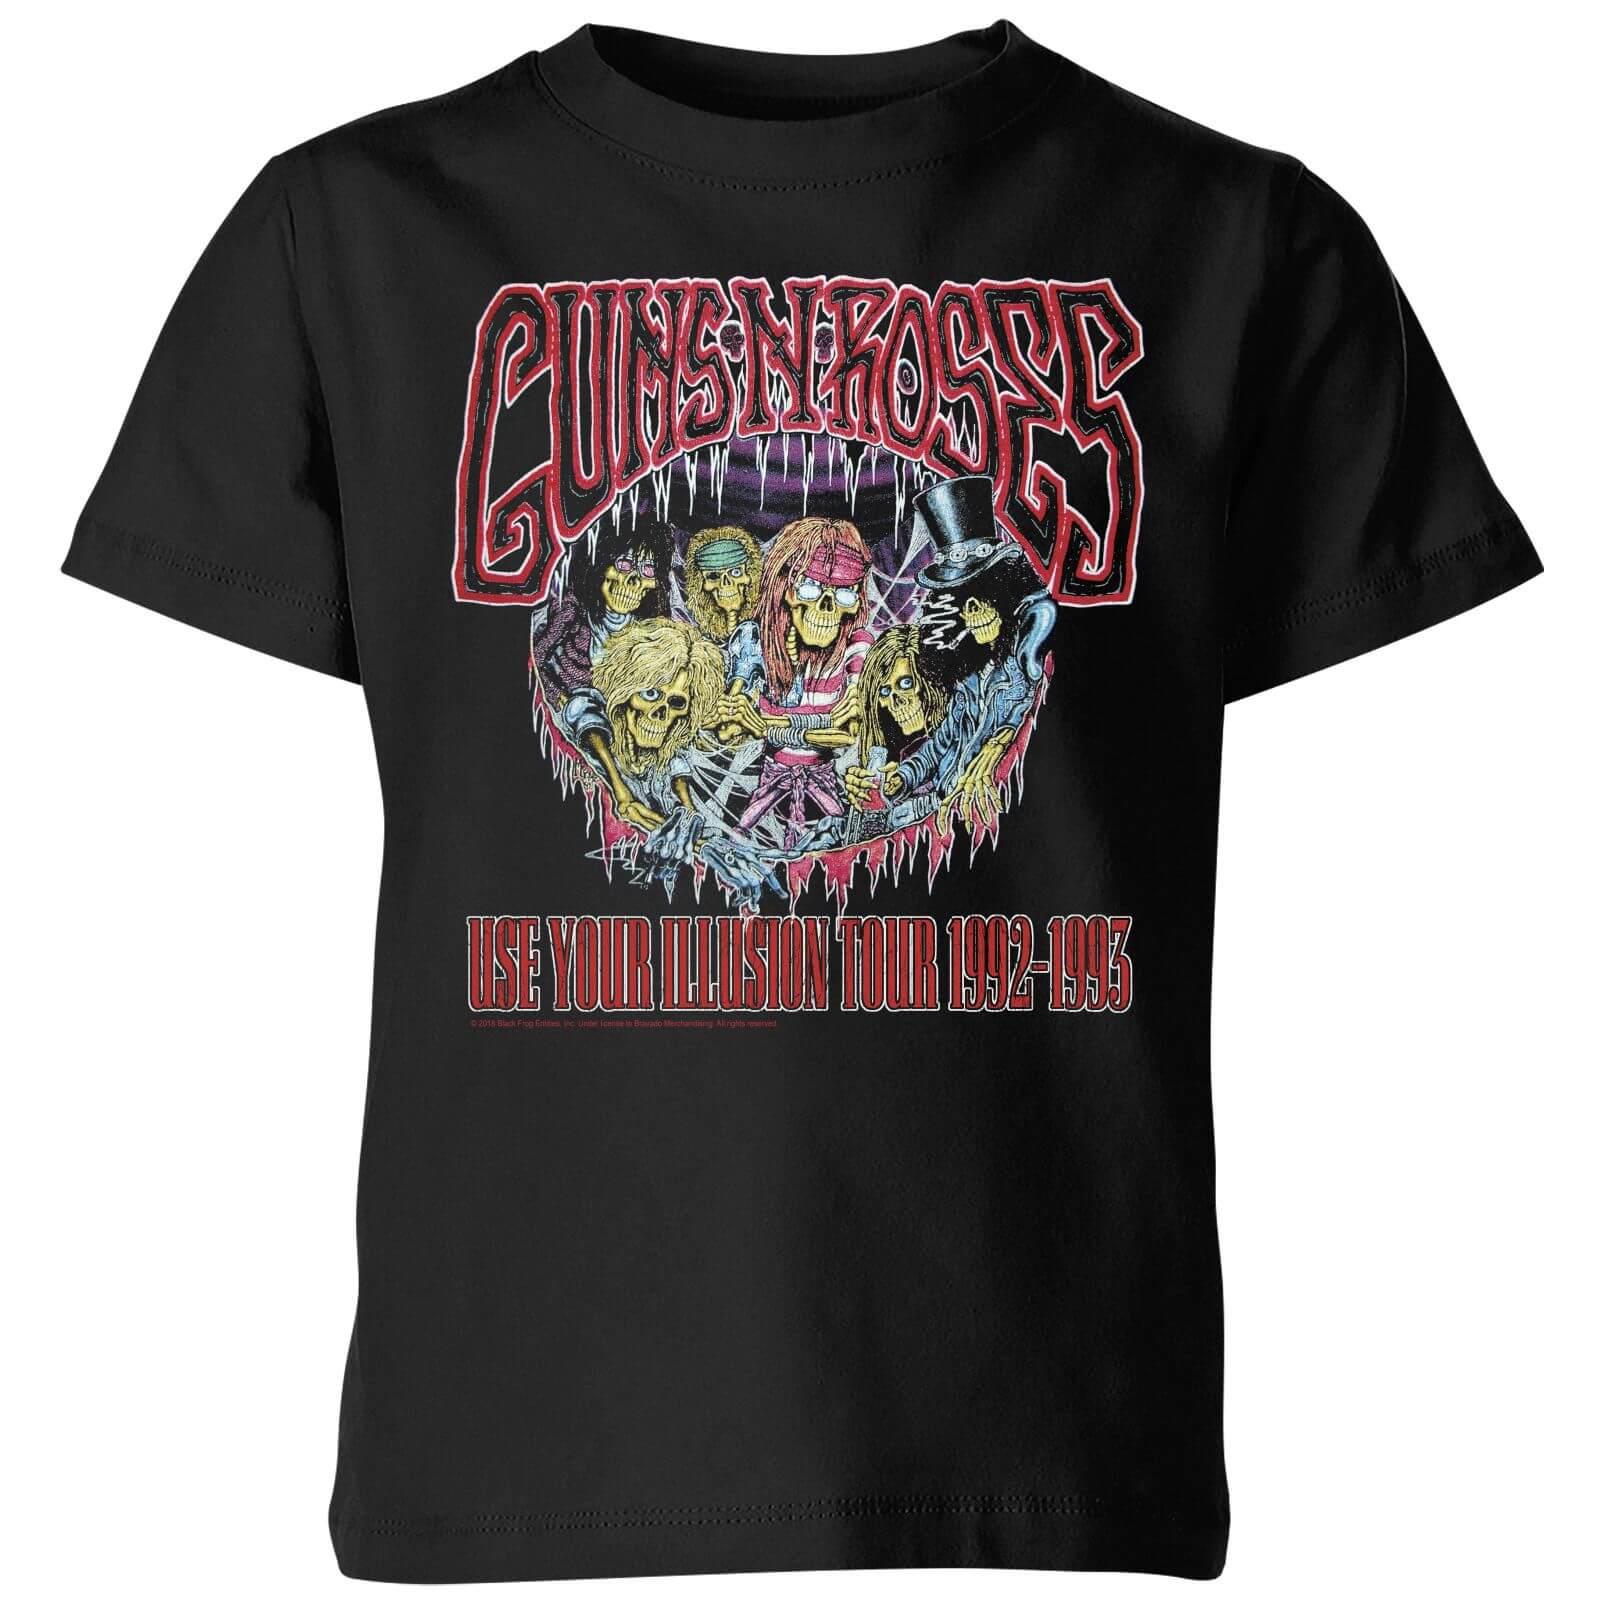 Guns N Roses Illusion Tour Kids' T-Shirt - Black - 9-10 Years